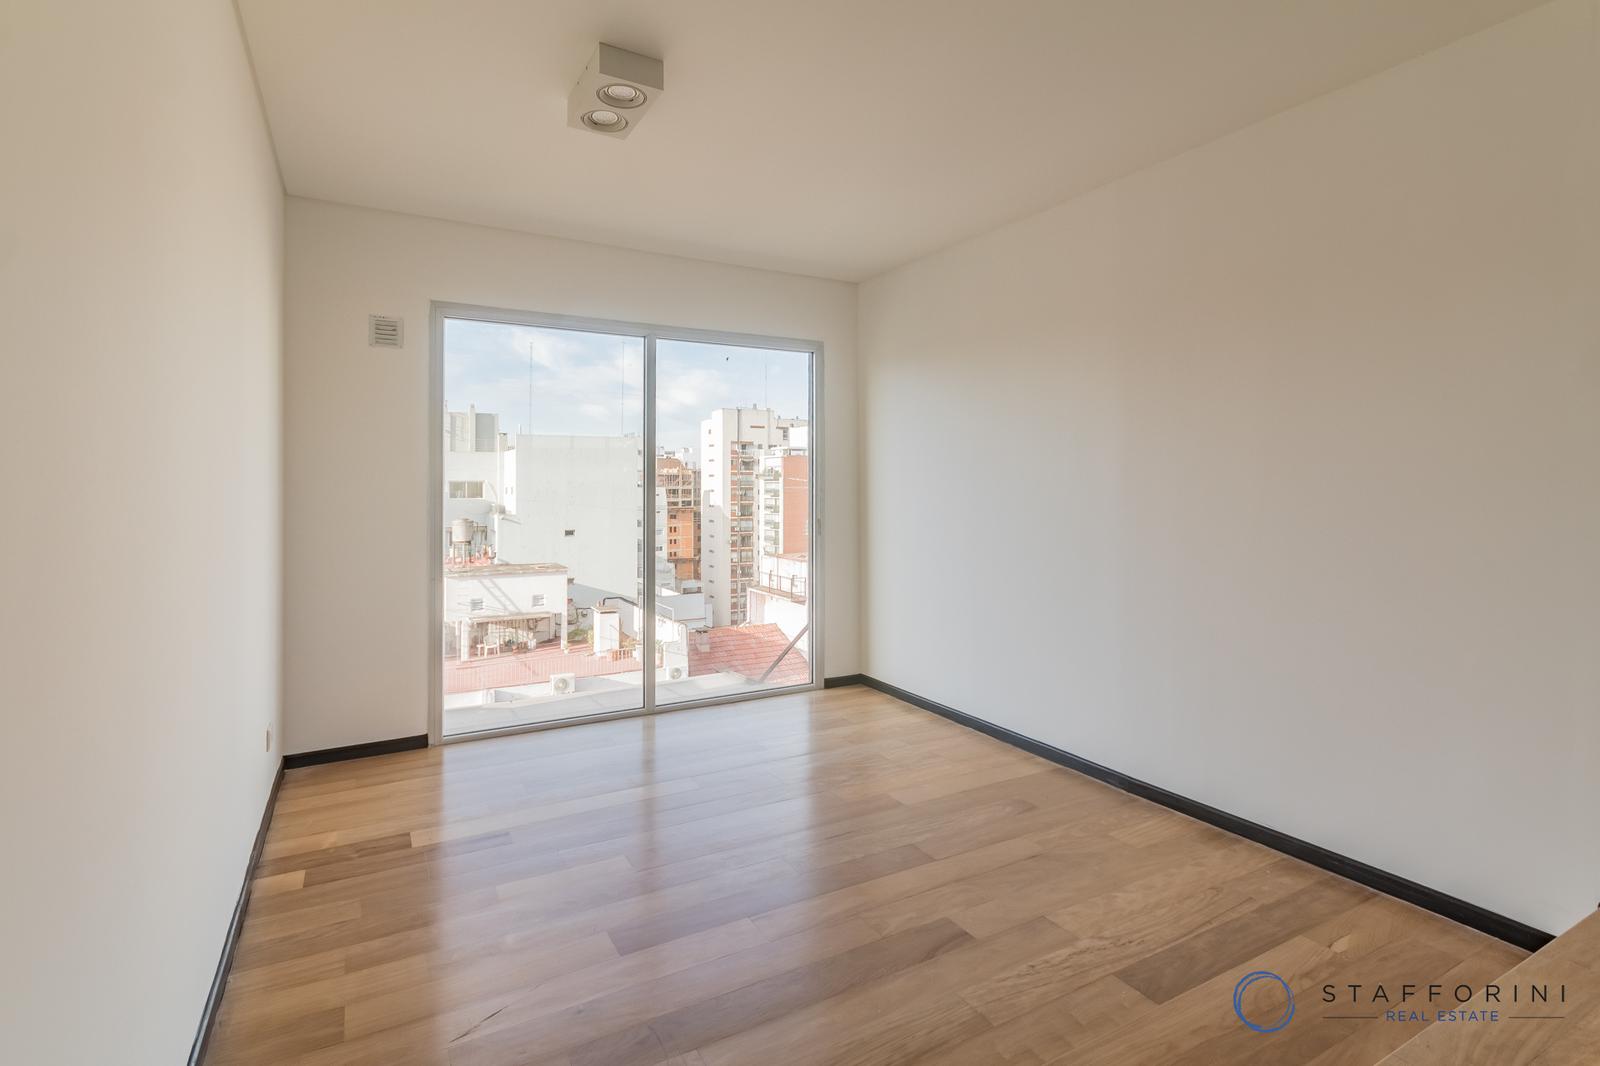 Departamento de 2 ambientes y medio, balcón terraza y parrilla - Cochera y Baulera - Belgrano